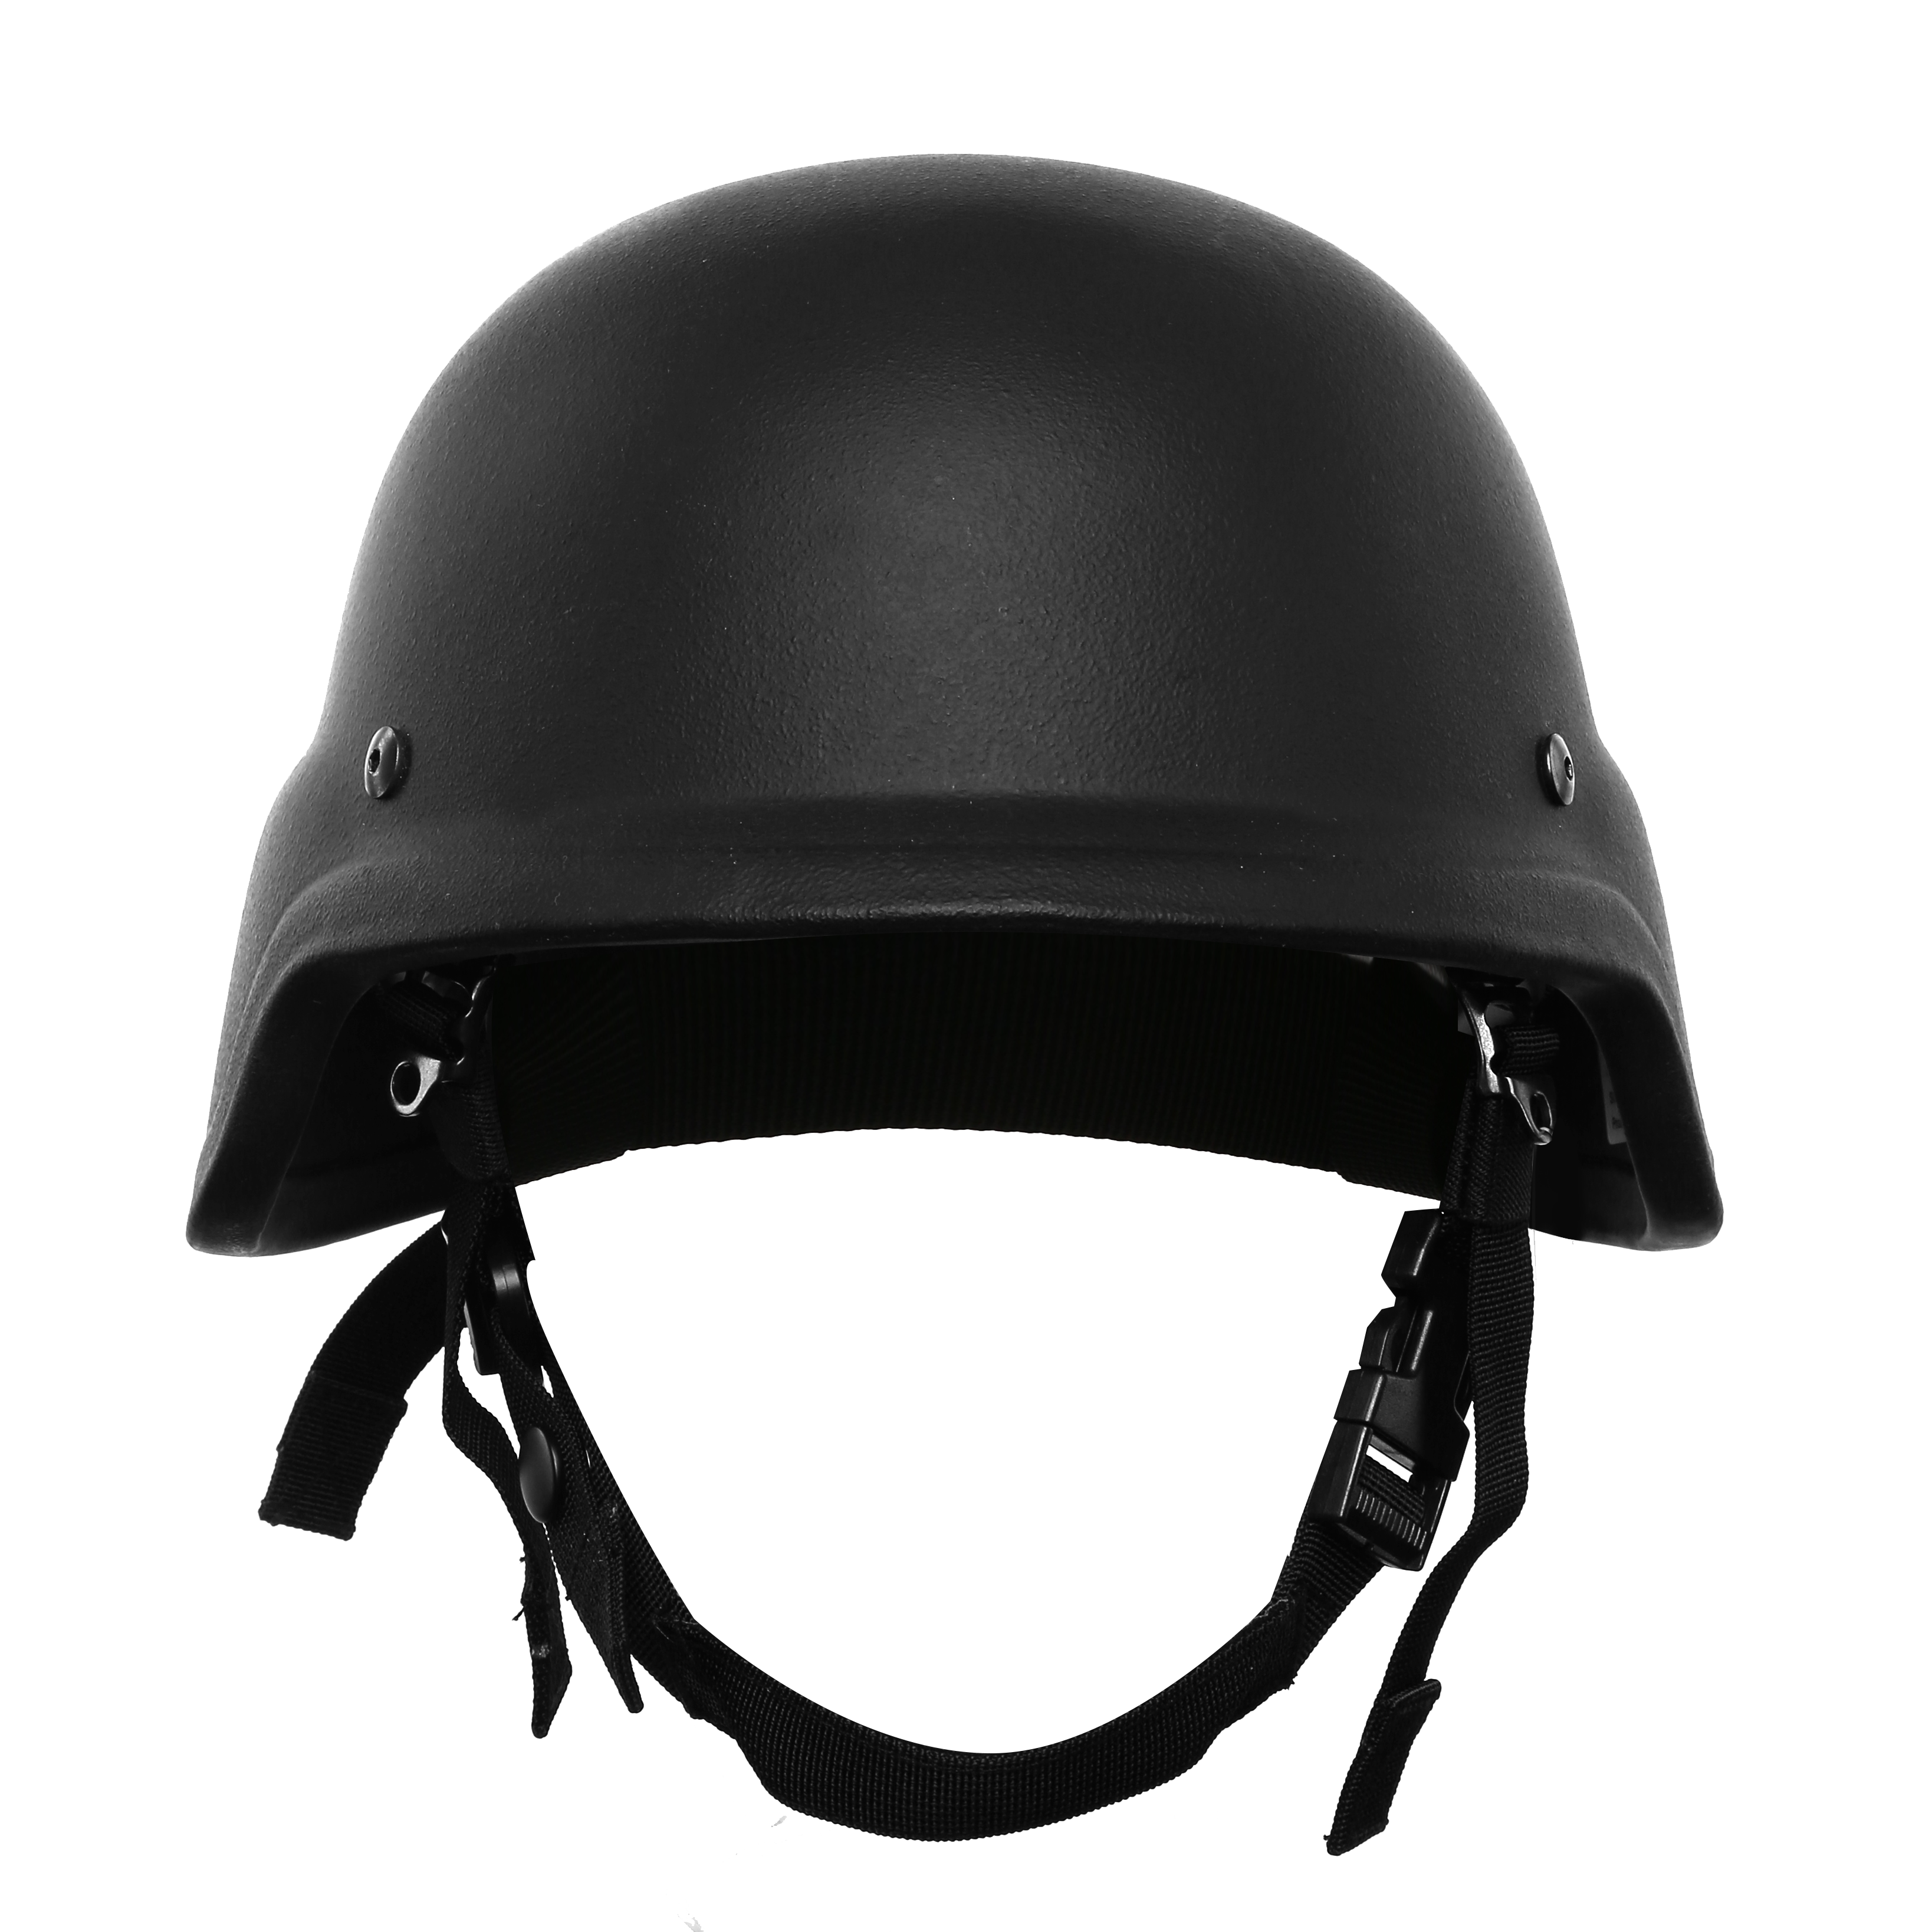 WENDY HELMET NIJ IIIA Bulletproof Helmet